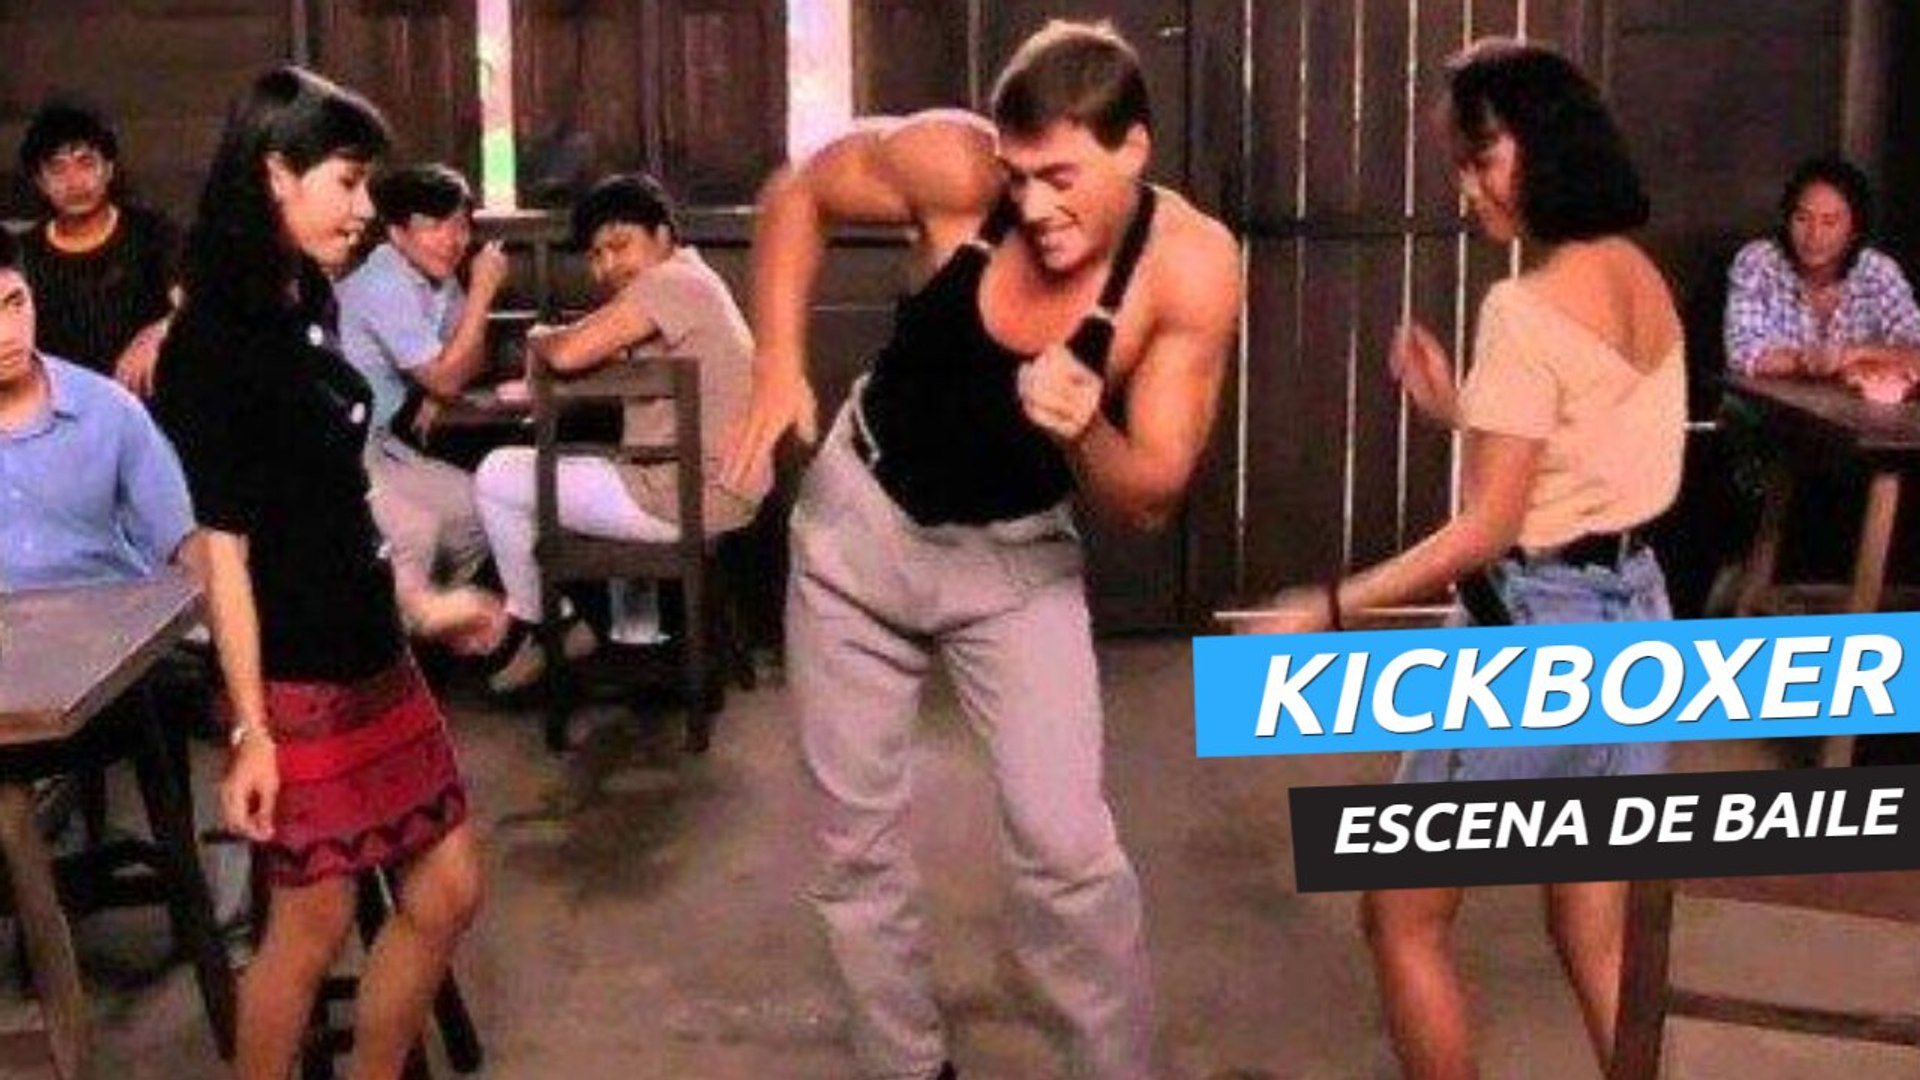 Kickboxer (1989) - Escena de baile - Vídeo Dailymotion